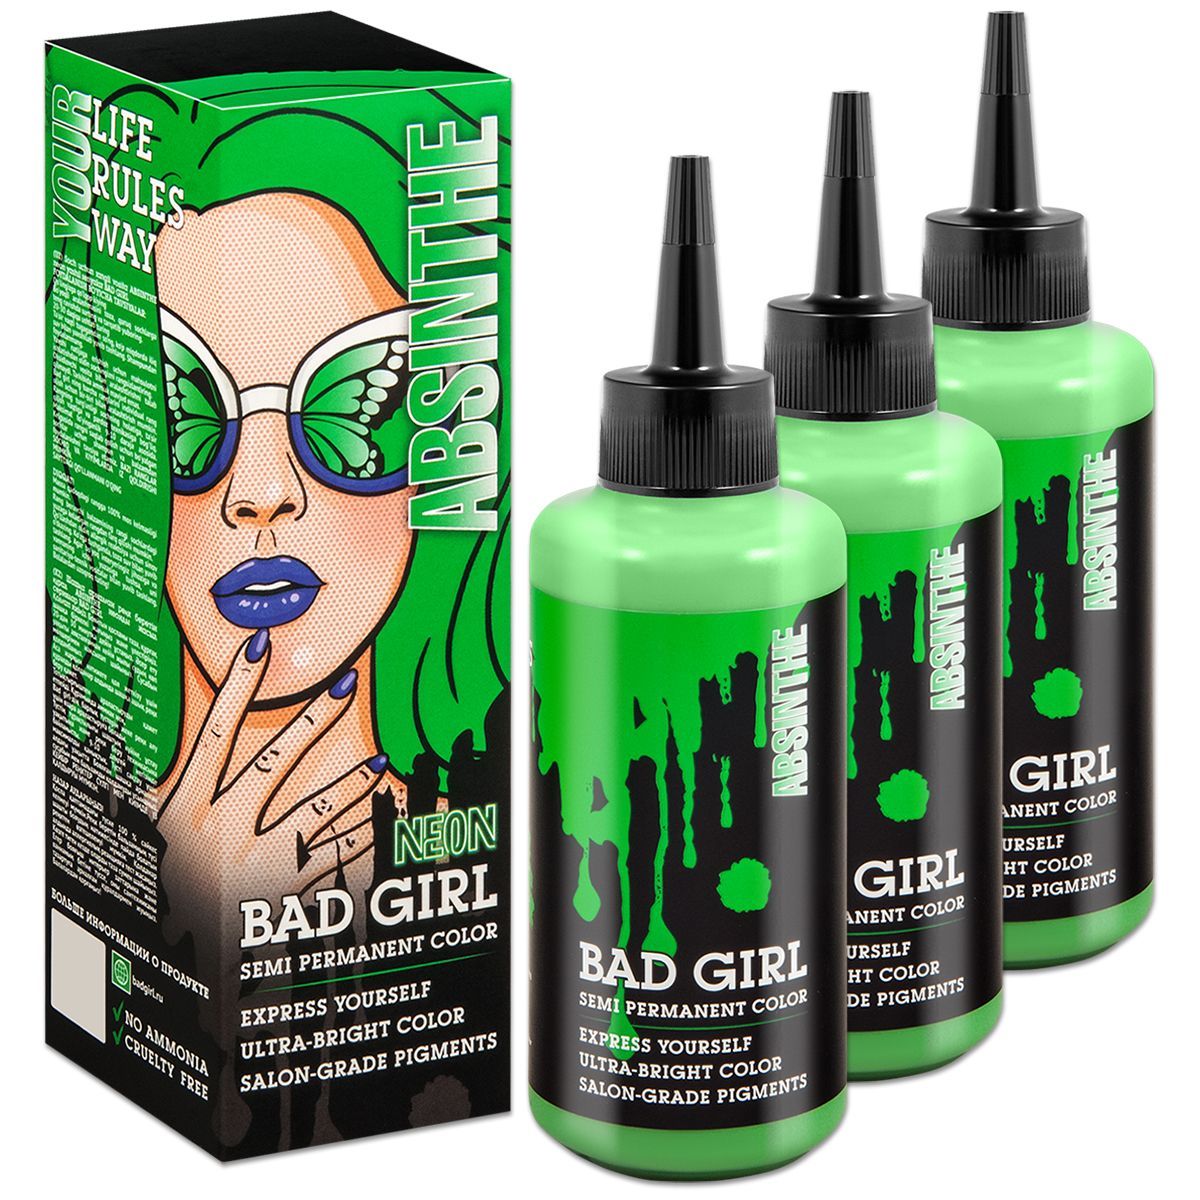 Оттеночный бальзам зеленый. Косметика для волос Bad hair. Пигмент прямого действия для волос Bad girl отзывы. Оттеночный бальзам для волос Bad girl Ice Dragon отзывы.